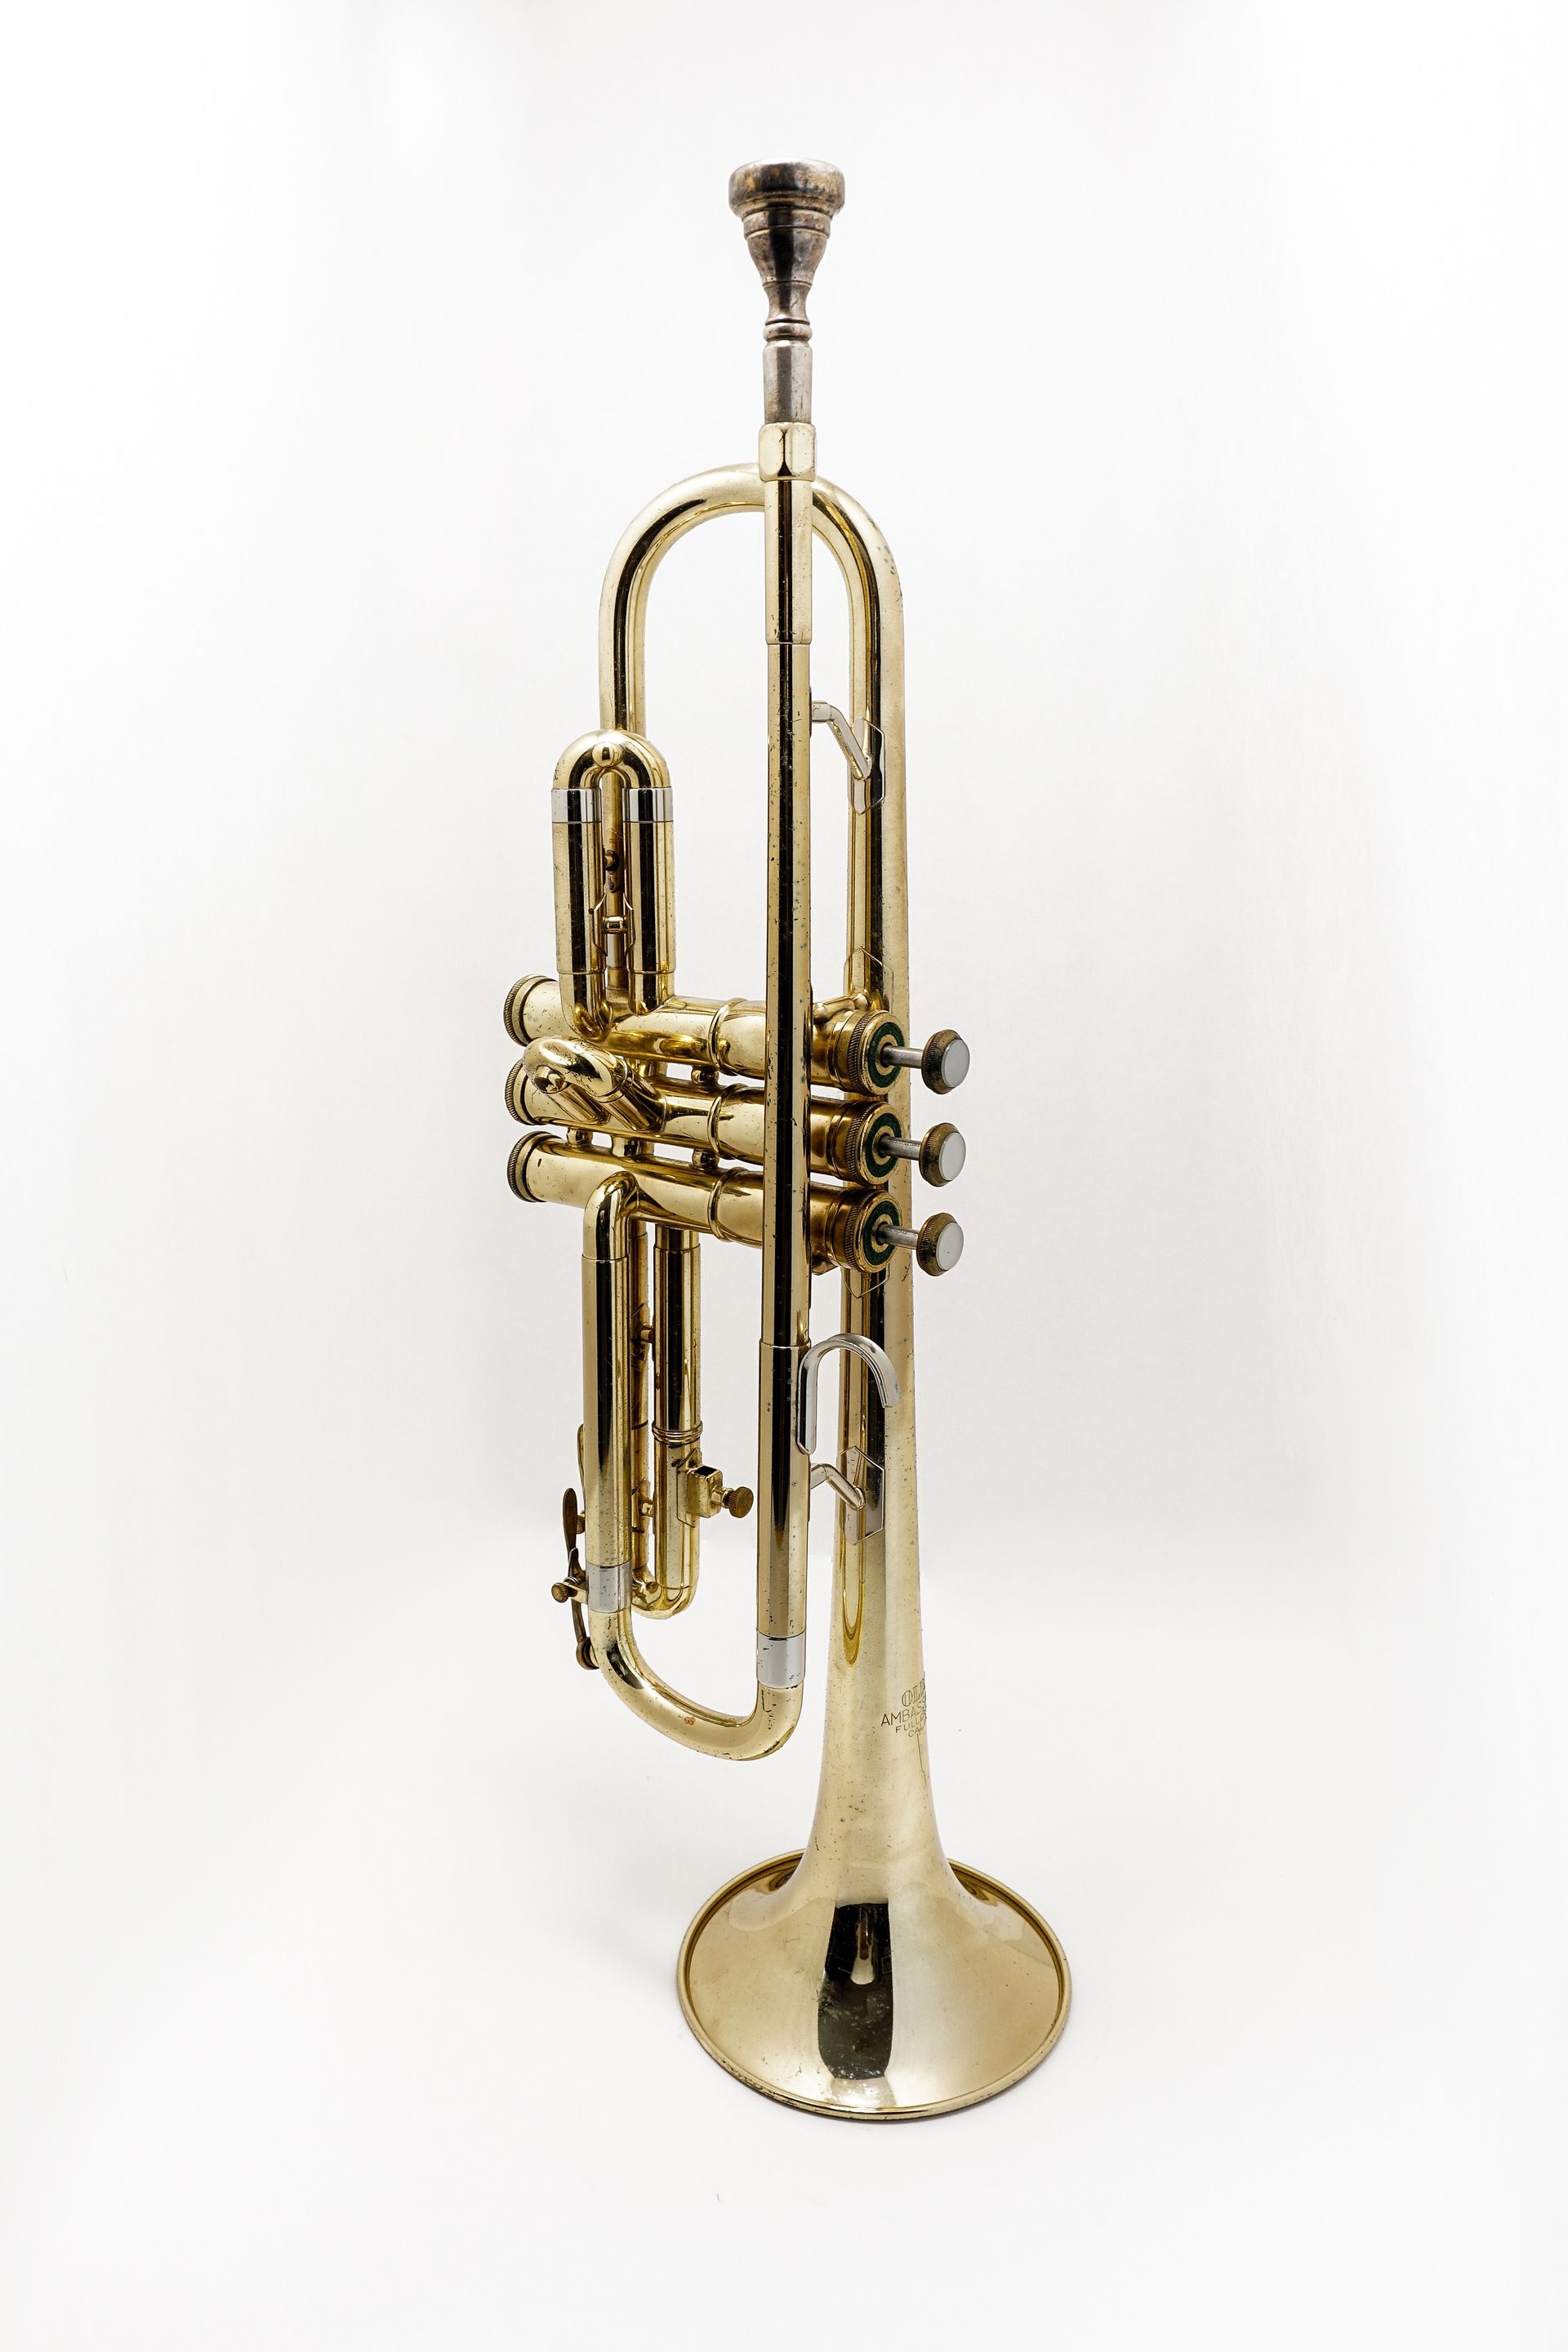 A trumpet.